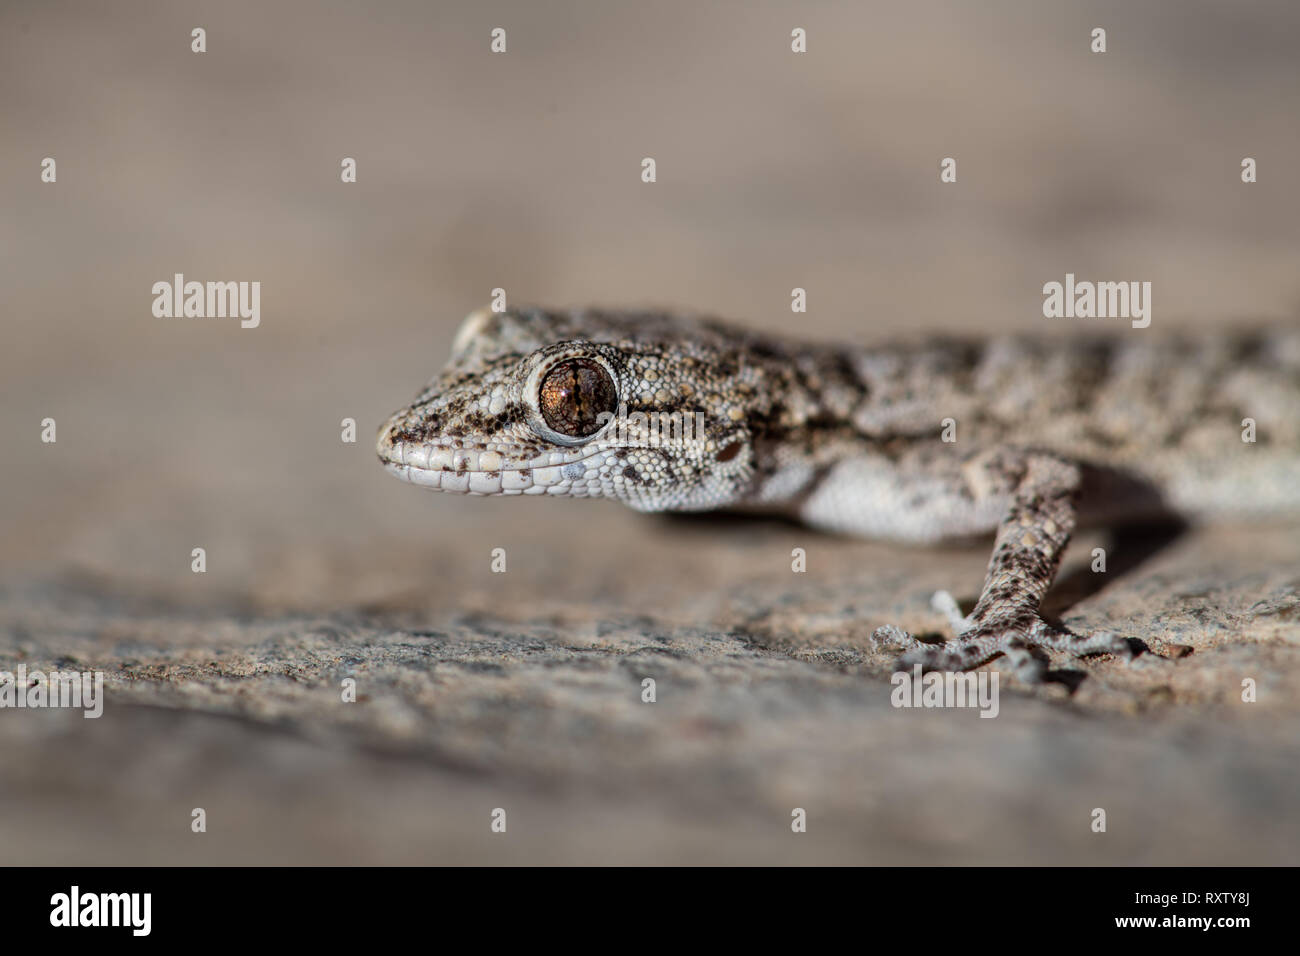 Un Kotschy's gecko dans son environnement naturel Banque D'Images